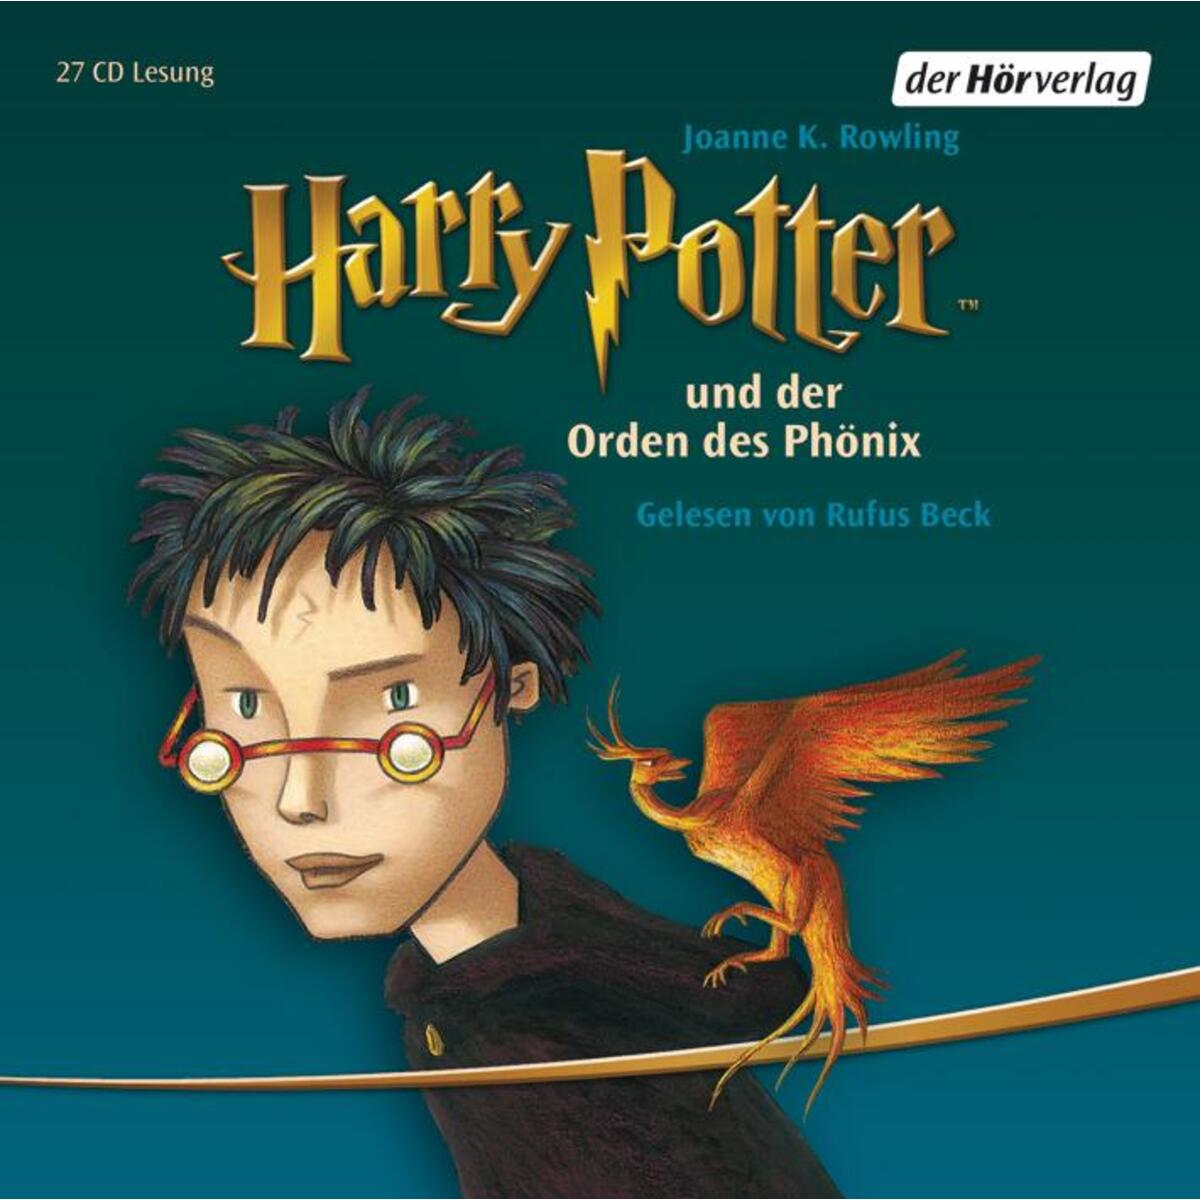 Harry Potter 5 und der Orden des Phönix von Hoerverlag DHV Der